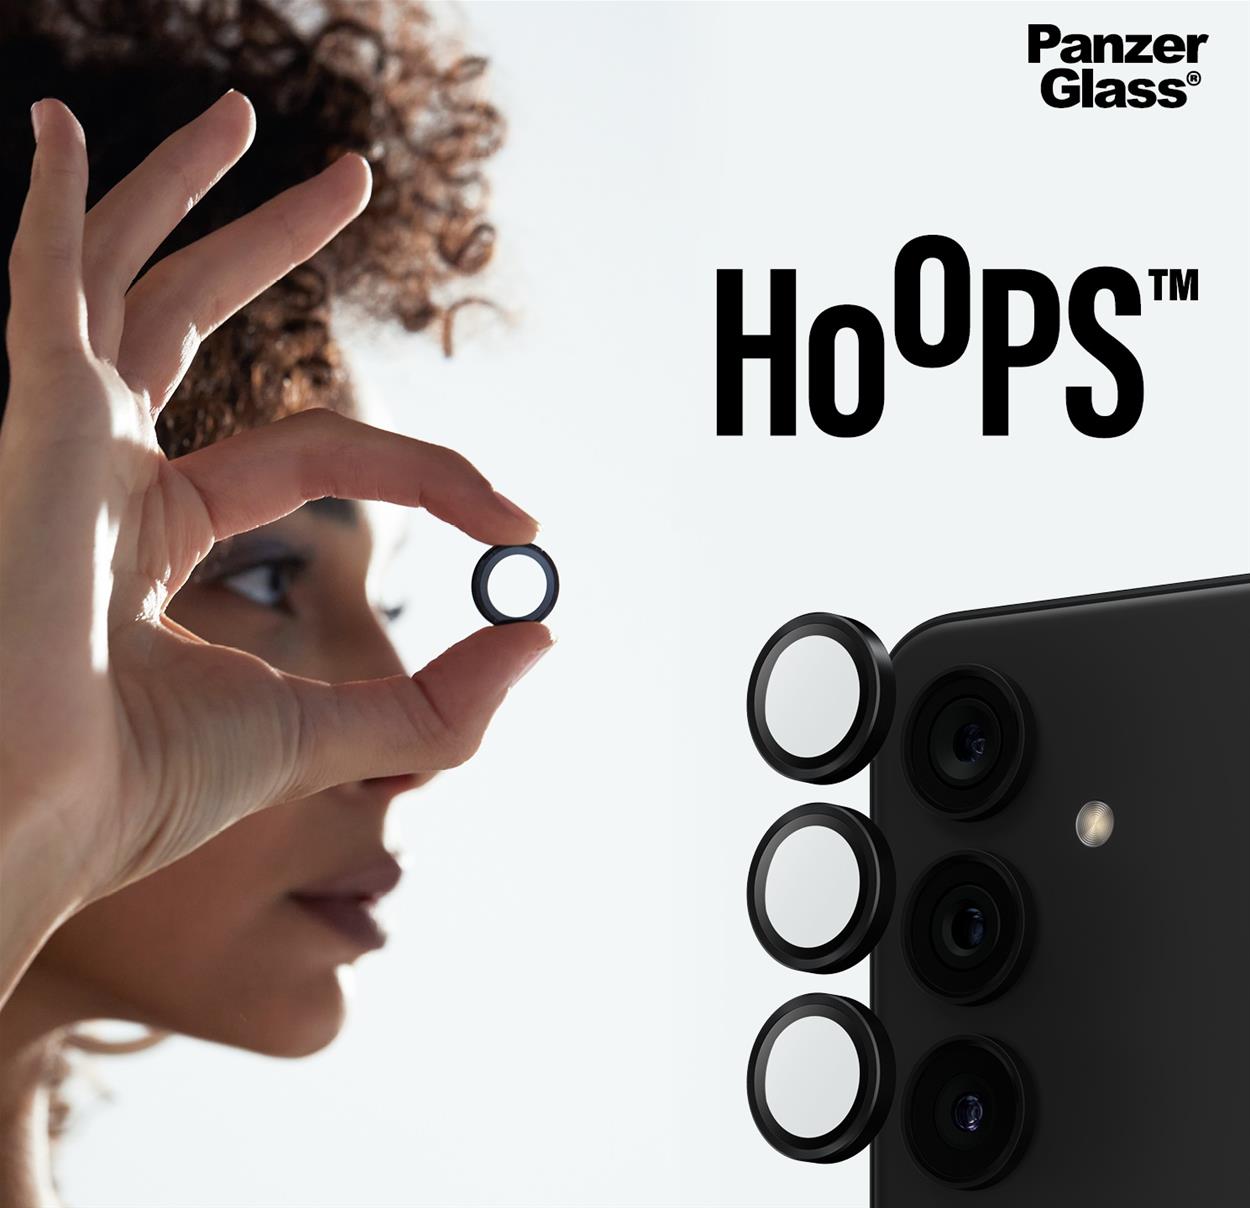 Ochranné sklo na objektív PanzerGlass HoOps Samsung Galaxy A25 5G (ochrana šošoviek fotoaparátu)